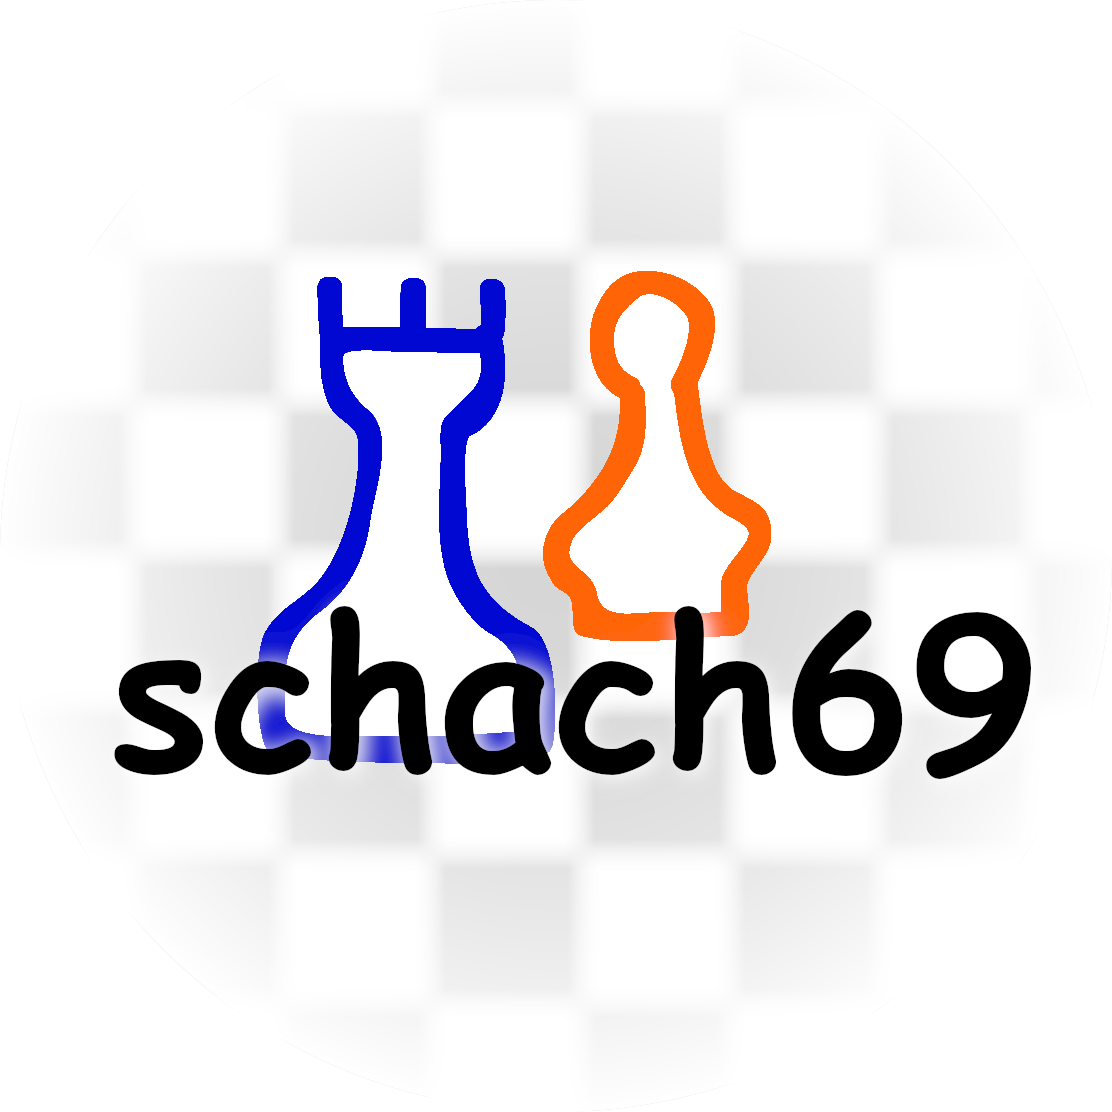 schach69